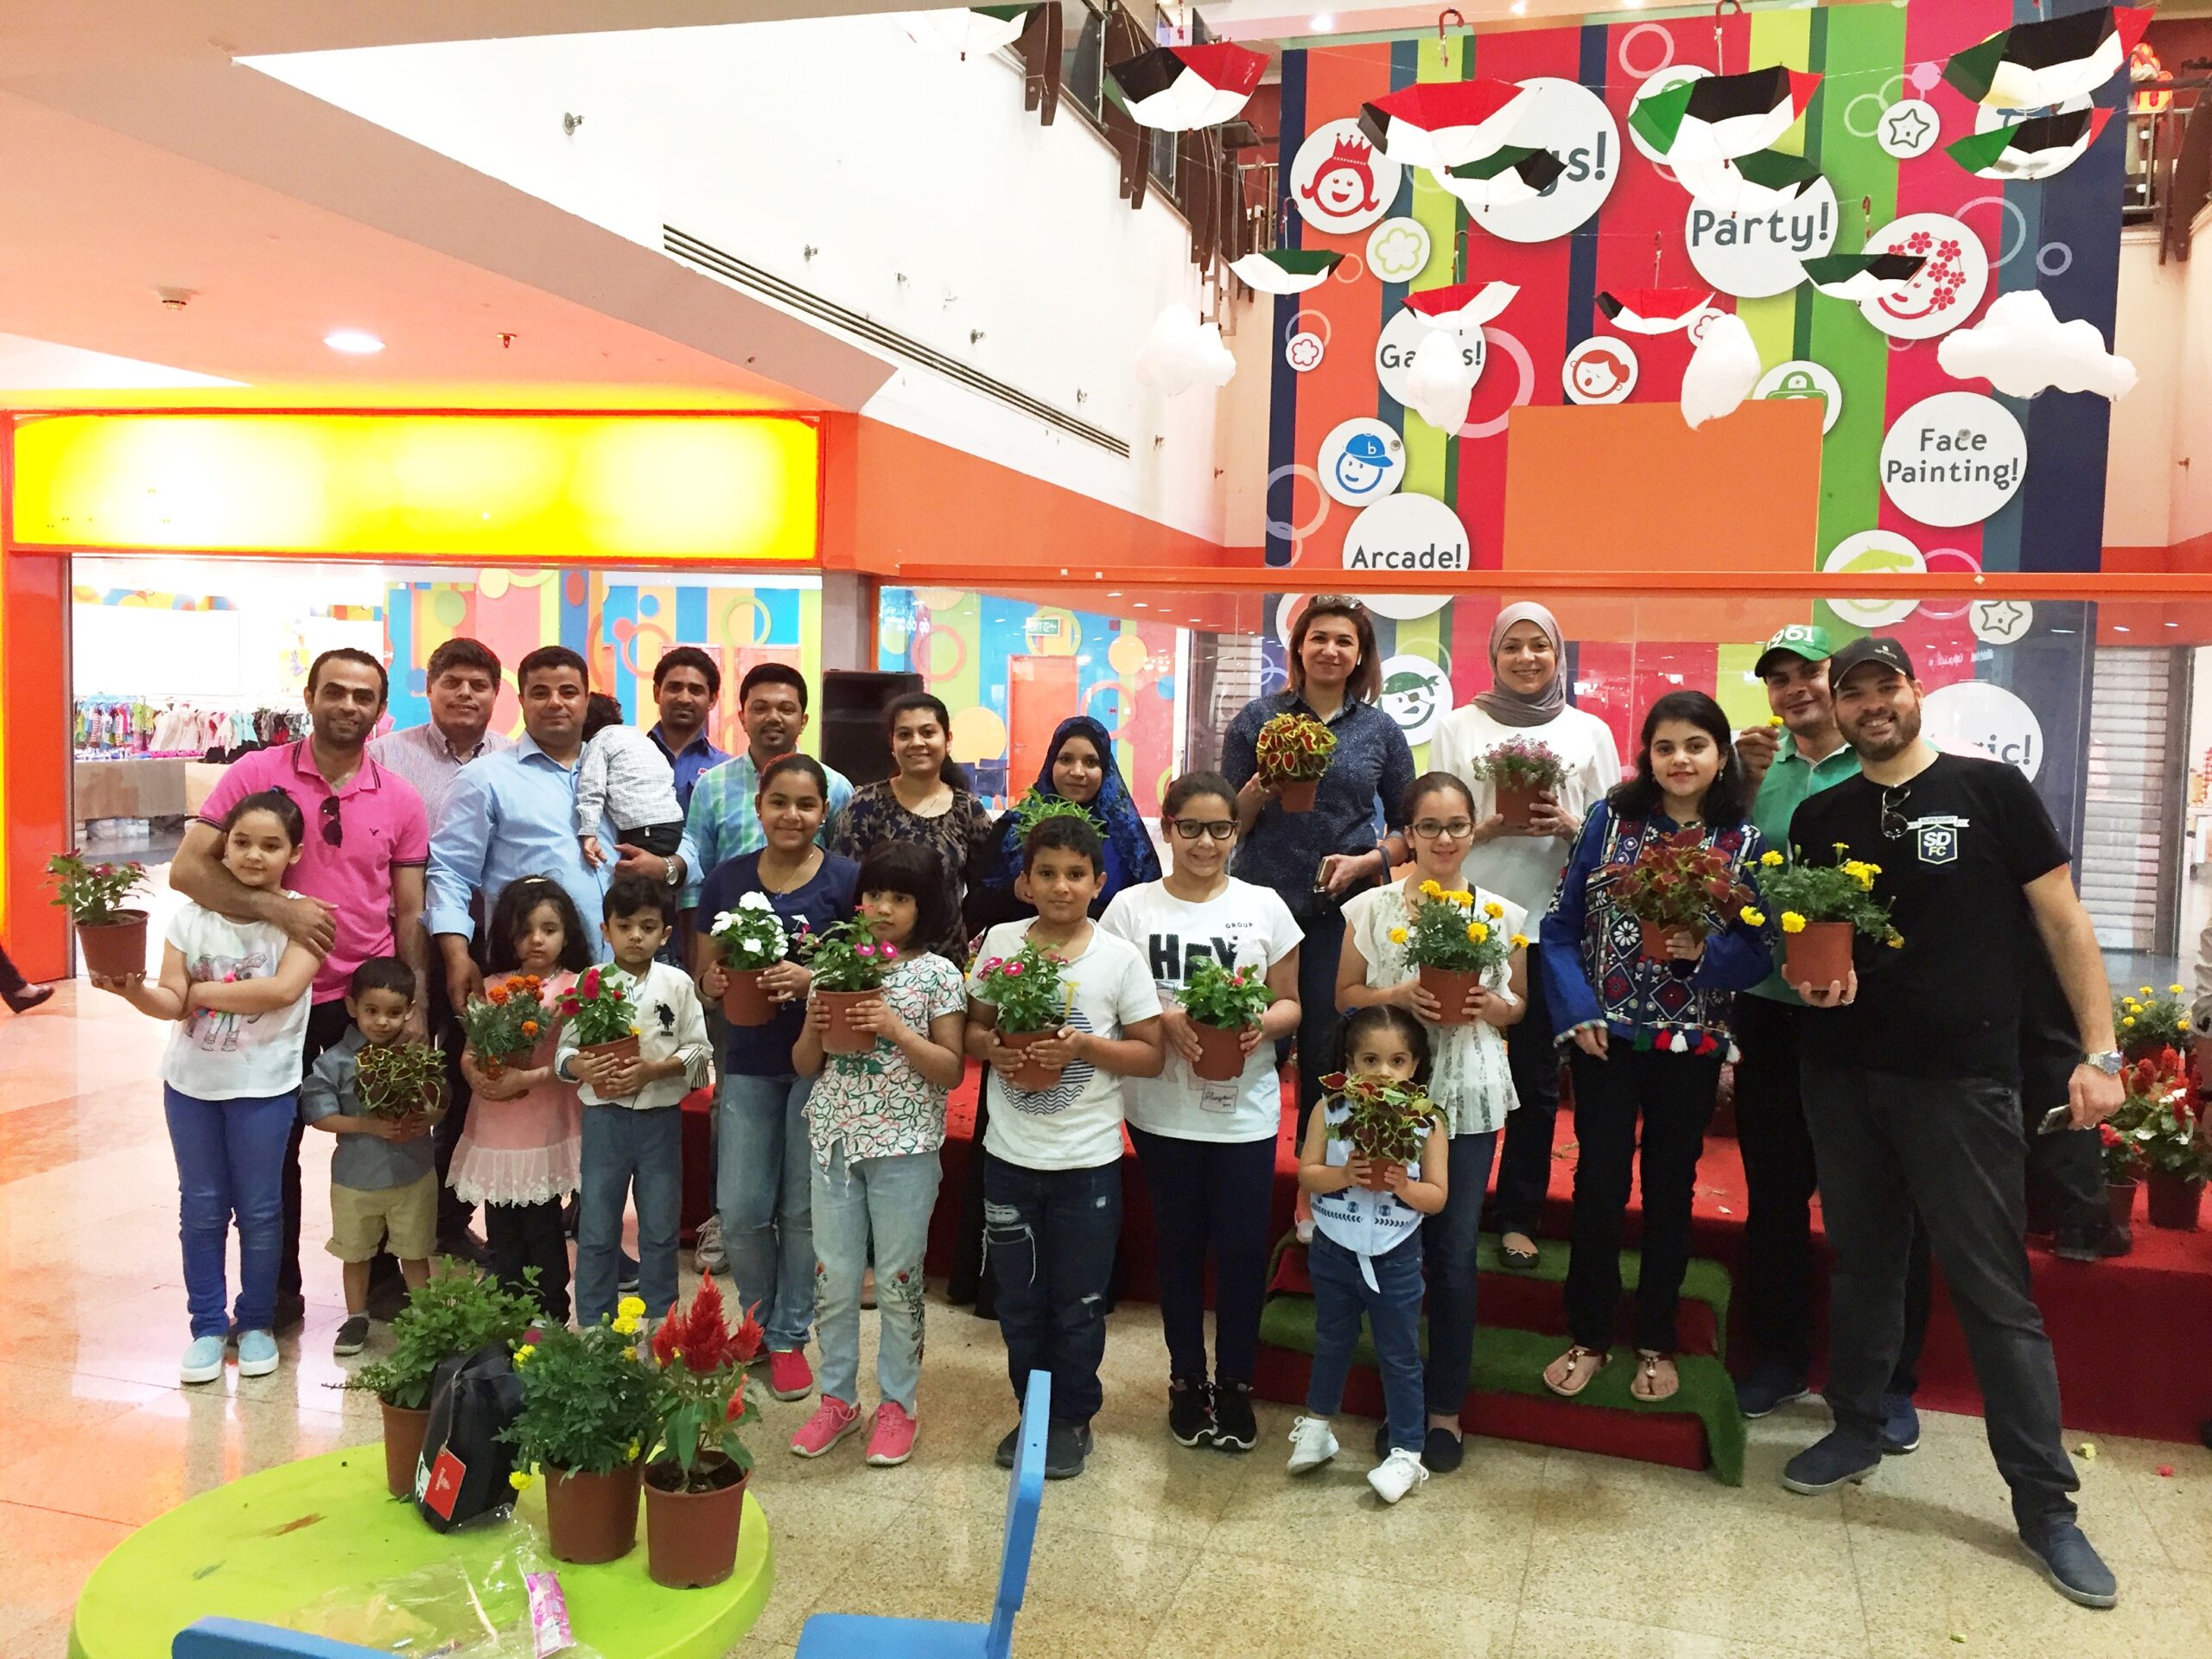 يوباك تحتفل باليوم العالمي للأرض مع الأطفال في ديسكفري مول